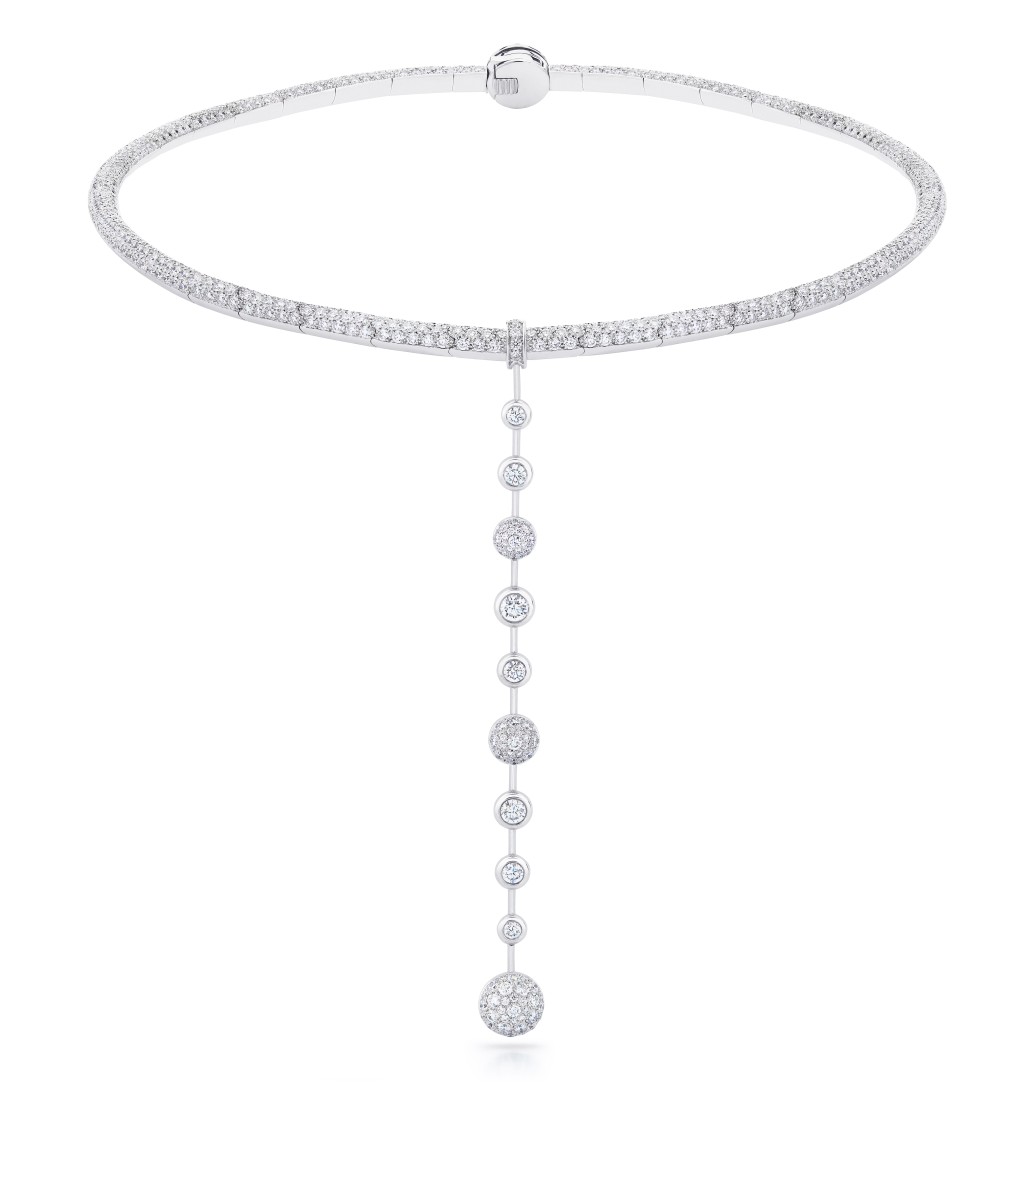 Atomique白金鑽石項鏈/$1,025,000，靈感源自鑽石的內部晶體結構。當中垂懸而下的圓形明亮式鑽石綫條，可從項鏈拆下，並連接兩個耳釘，營造不對稱的獨特造型。